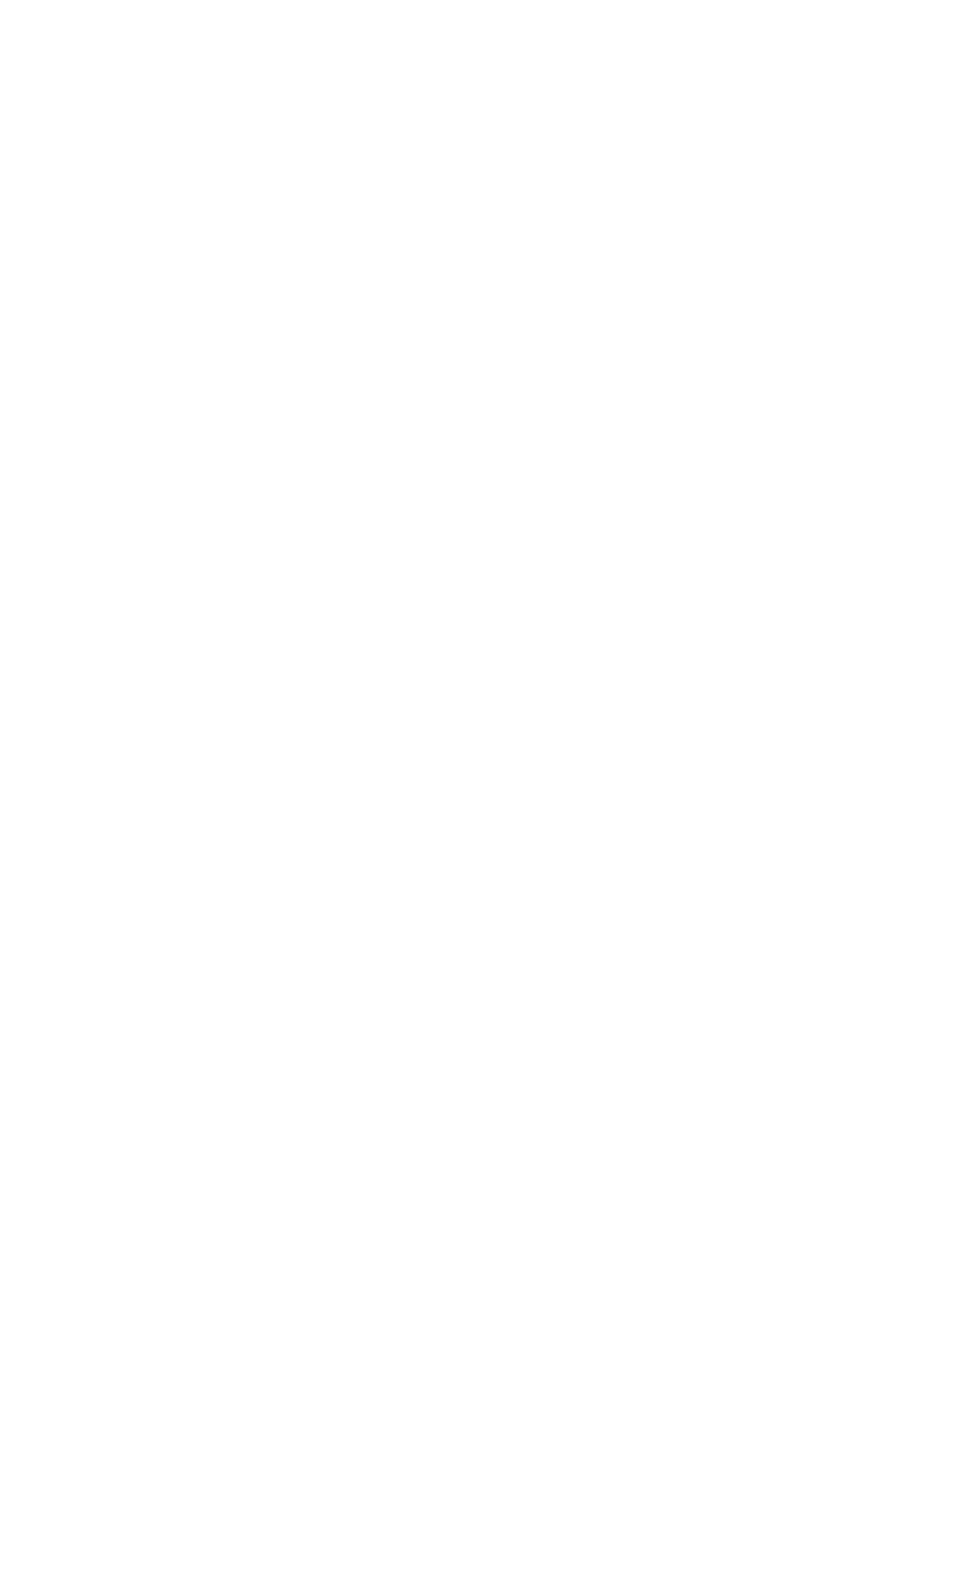 Safestore logo for dark backgrounds (transparent PNG)